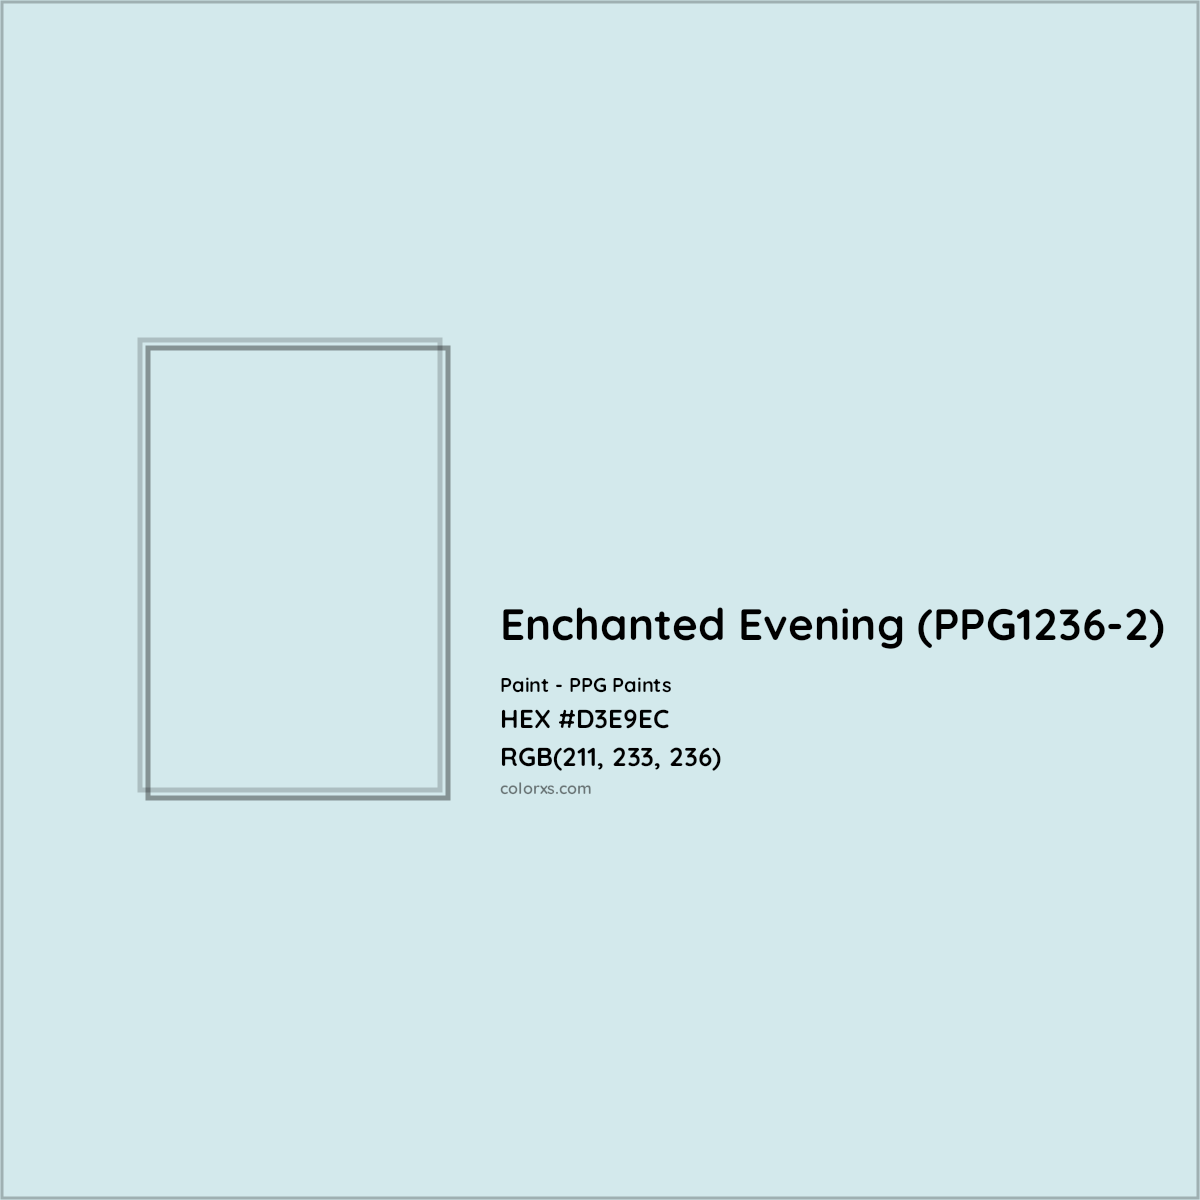 HEX #D3E9EC Enchanted Evening (PPG1236-2) Paint PPG Paints - Color Code